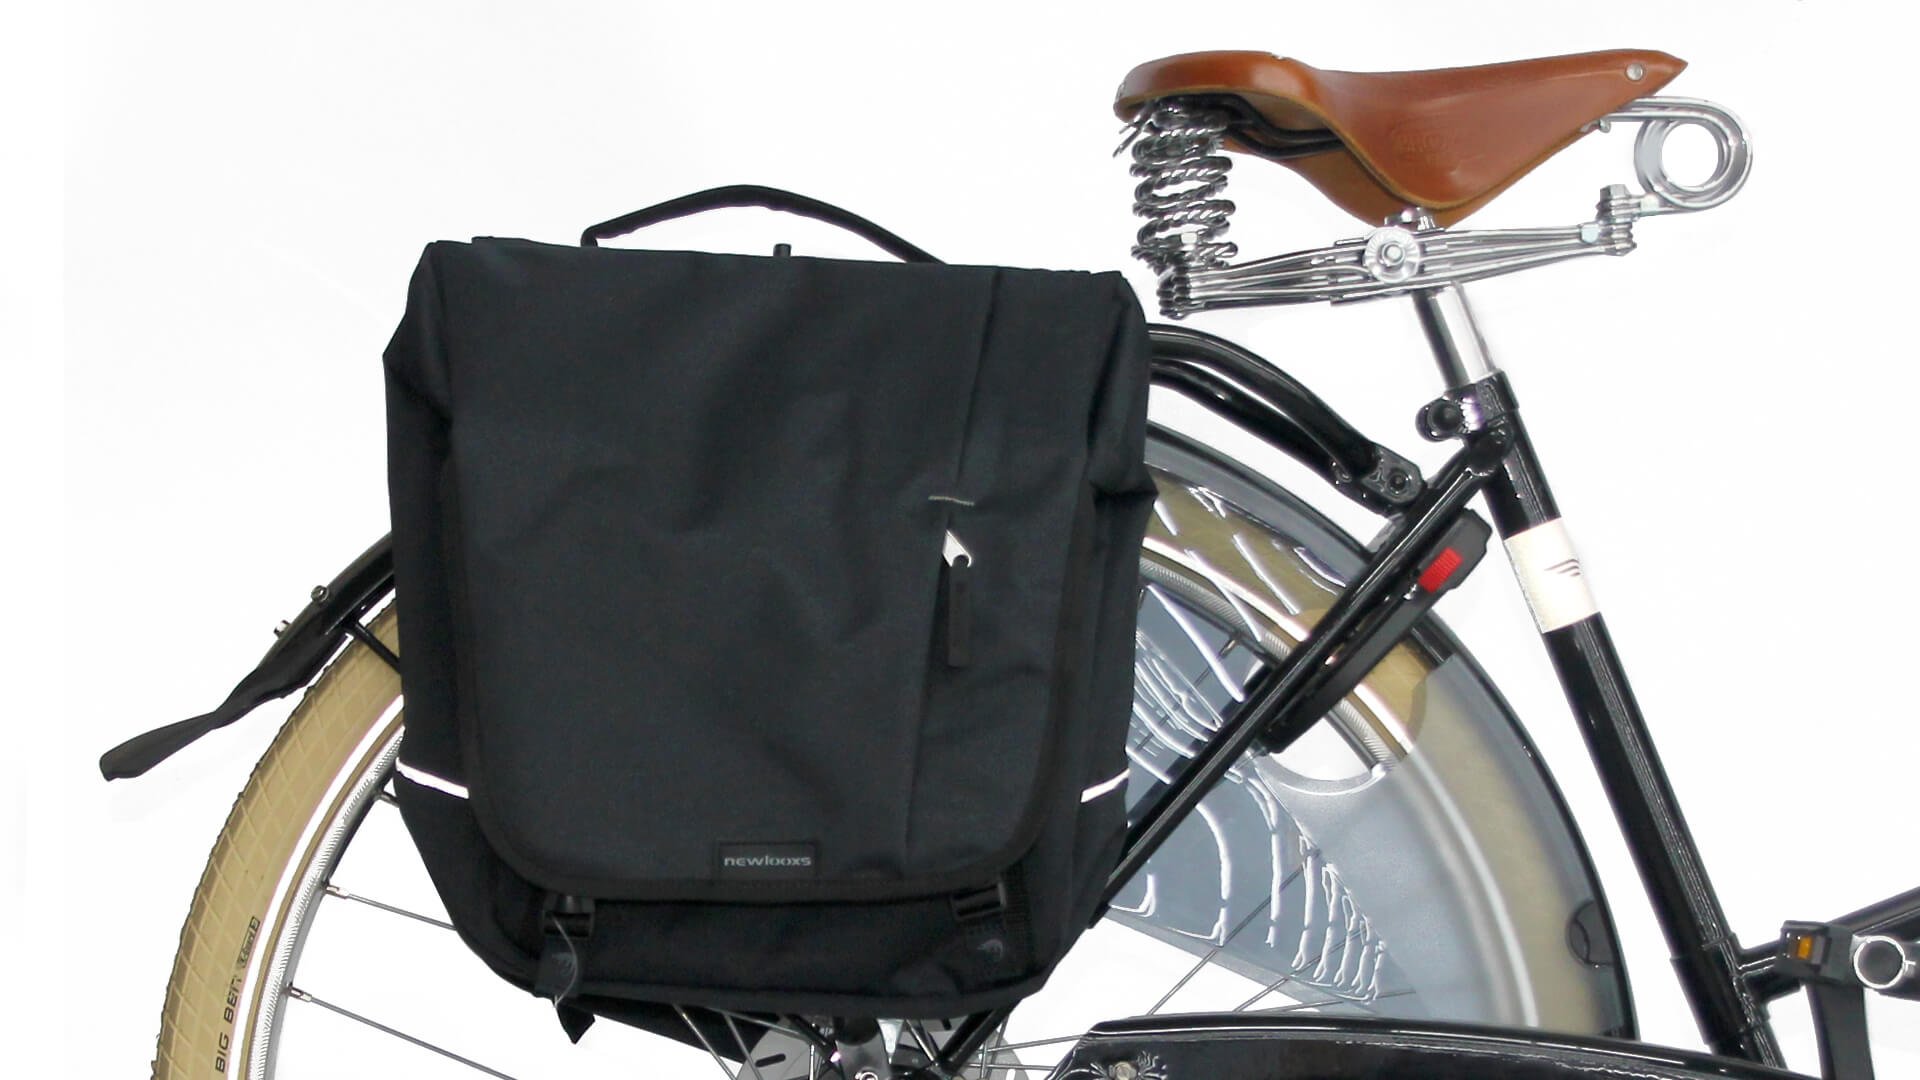  Sacoche de vélo Nova Double fixée sur le porte-bagage